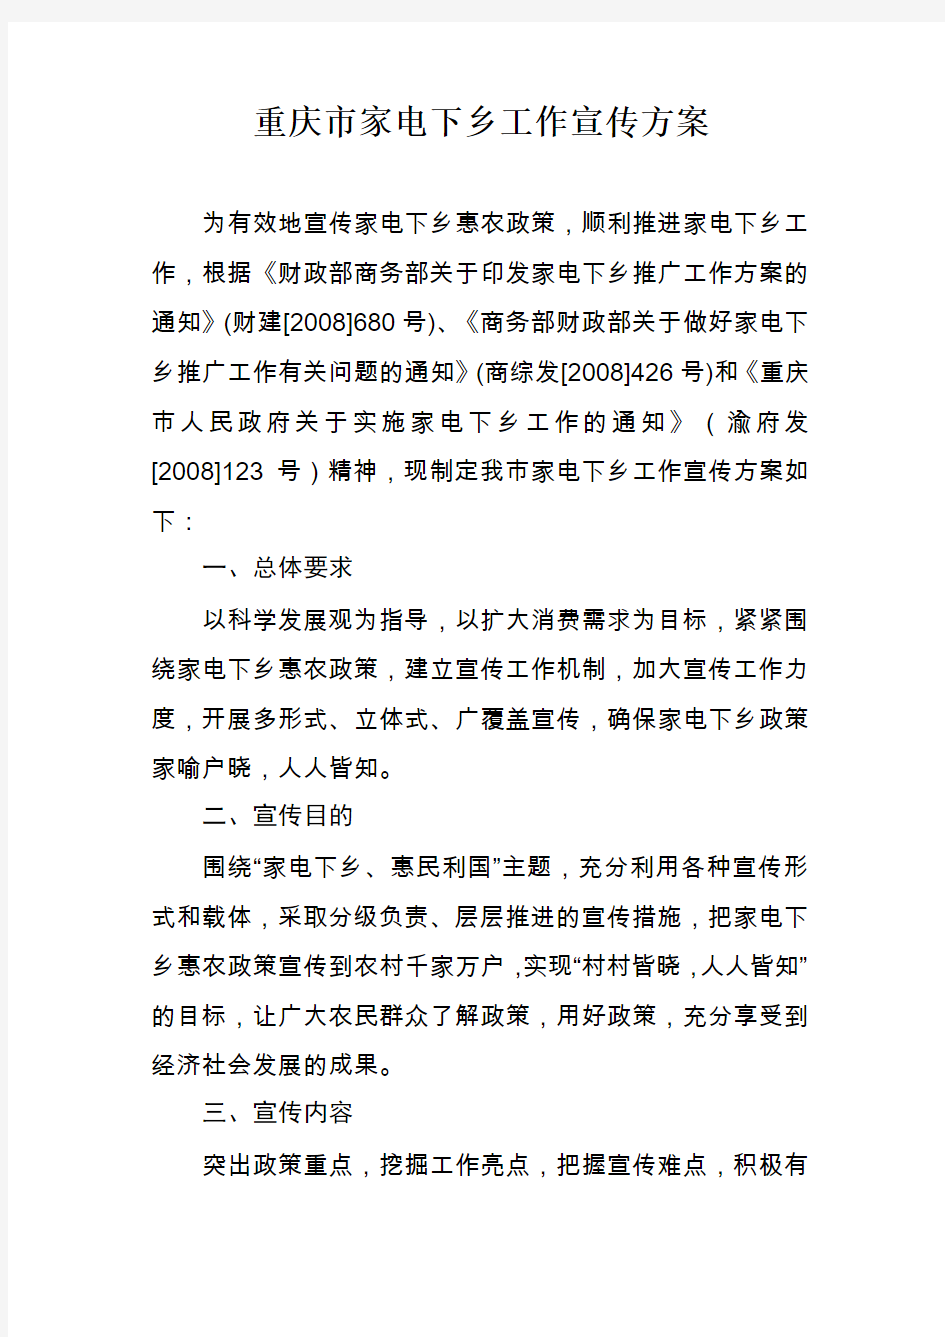 重庆市家电下乡工作宣传方案计划